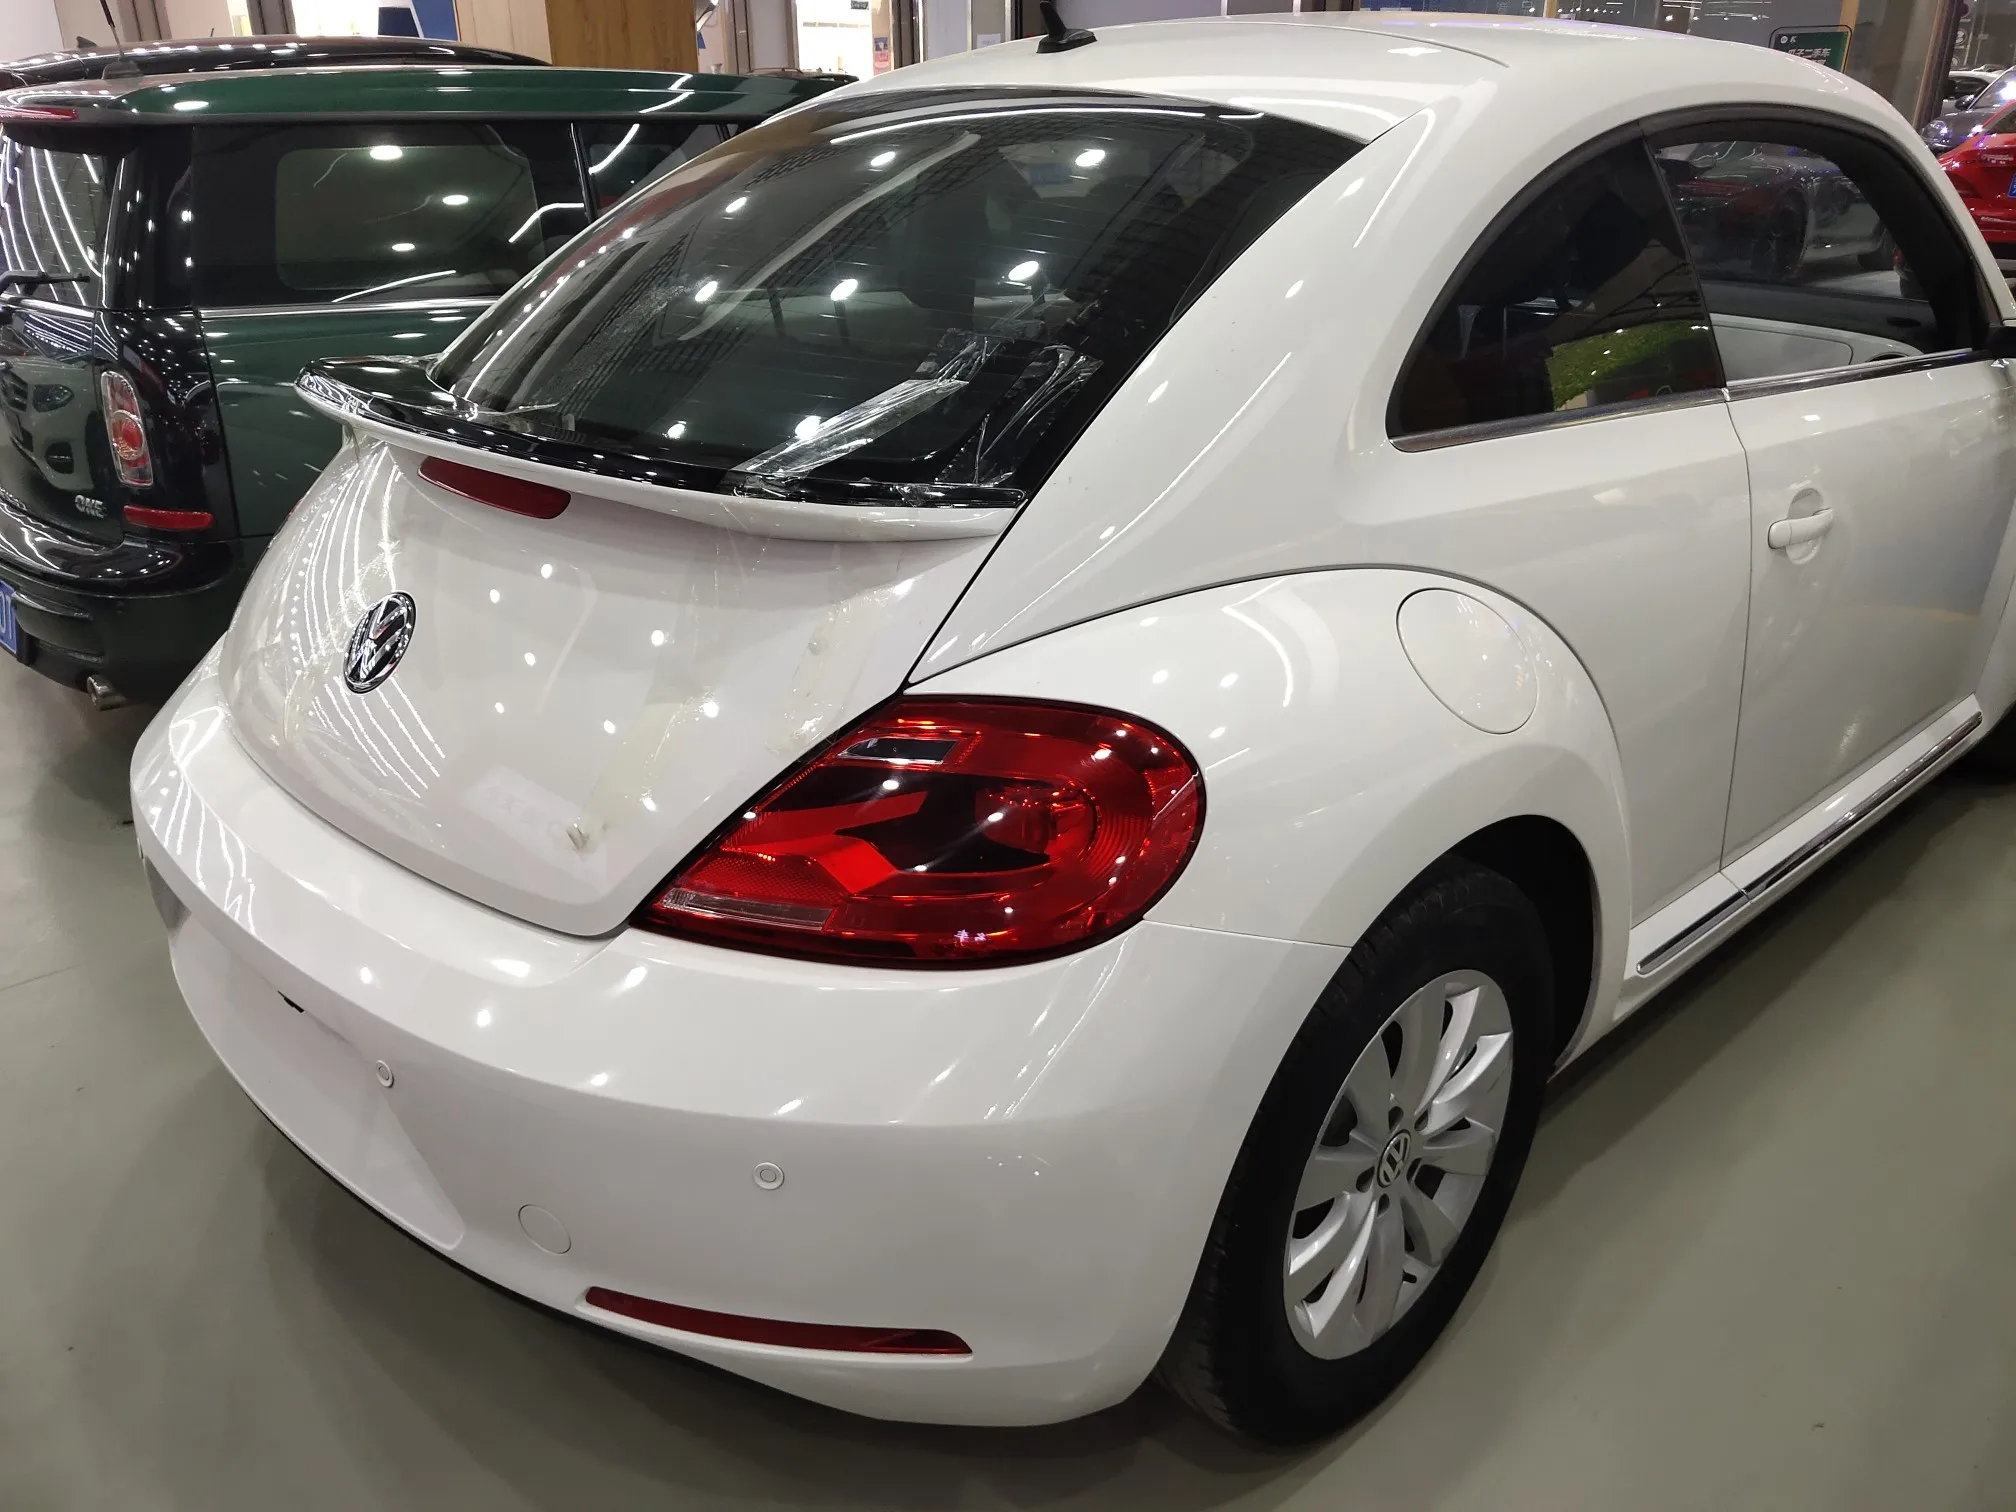 

Задний спойлер для Volkswagen Beetle из АБС-пластика Неокрашенный праймер цвет заднее крыло багажника губа 2013 2014 2015 2016 2017 2018 спойлер